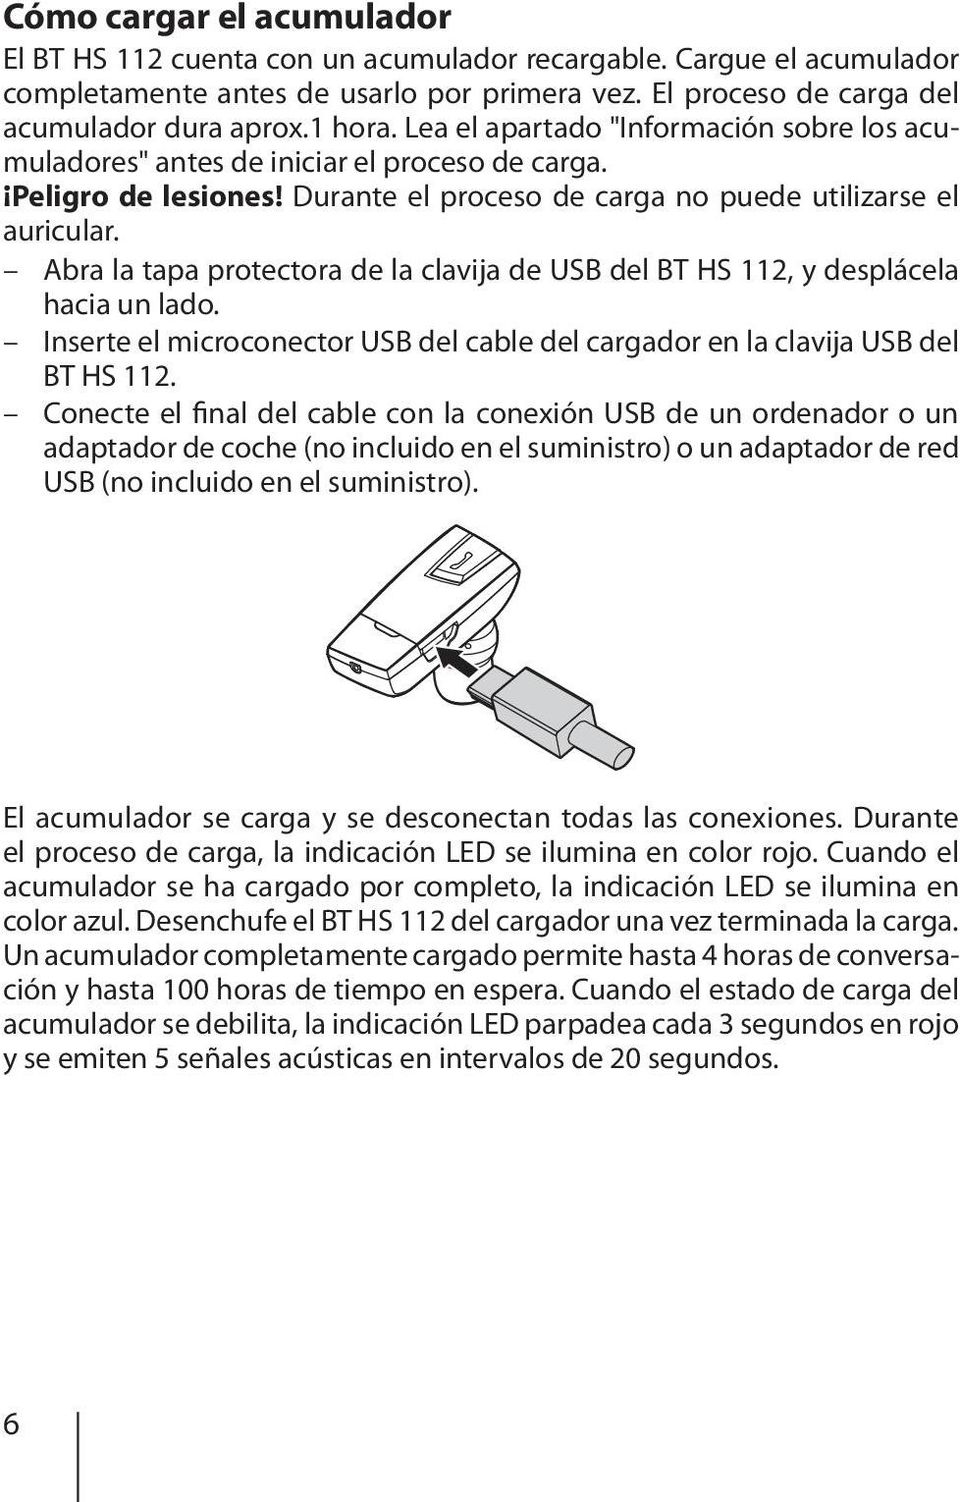 Abra la tapa protectora de la clavija de USB del BT HS 112, y desplácela hacia un lado. Inserte el microconector USB del cable del cargador en la clavija USB del BT HS 112.